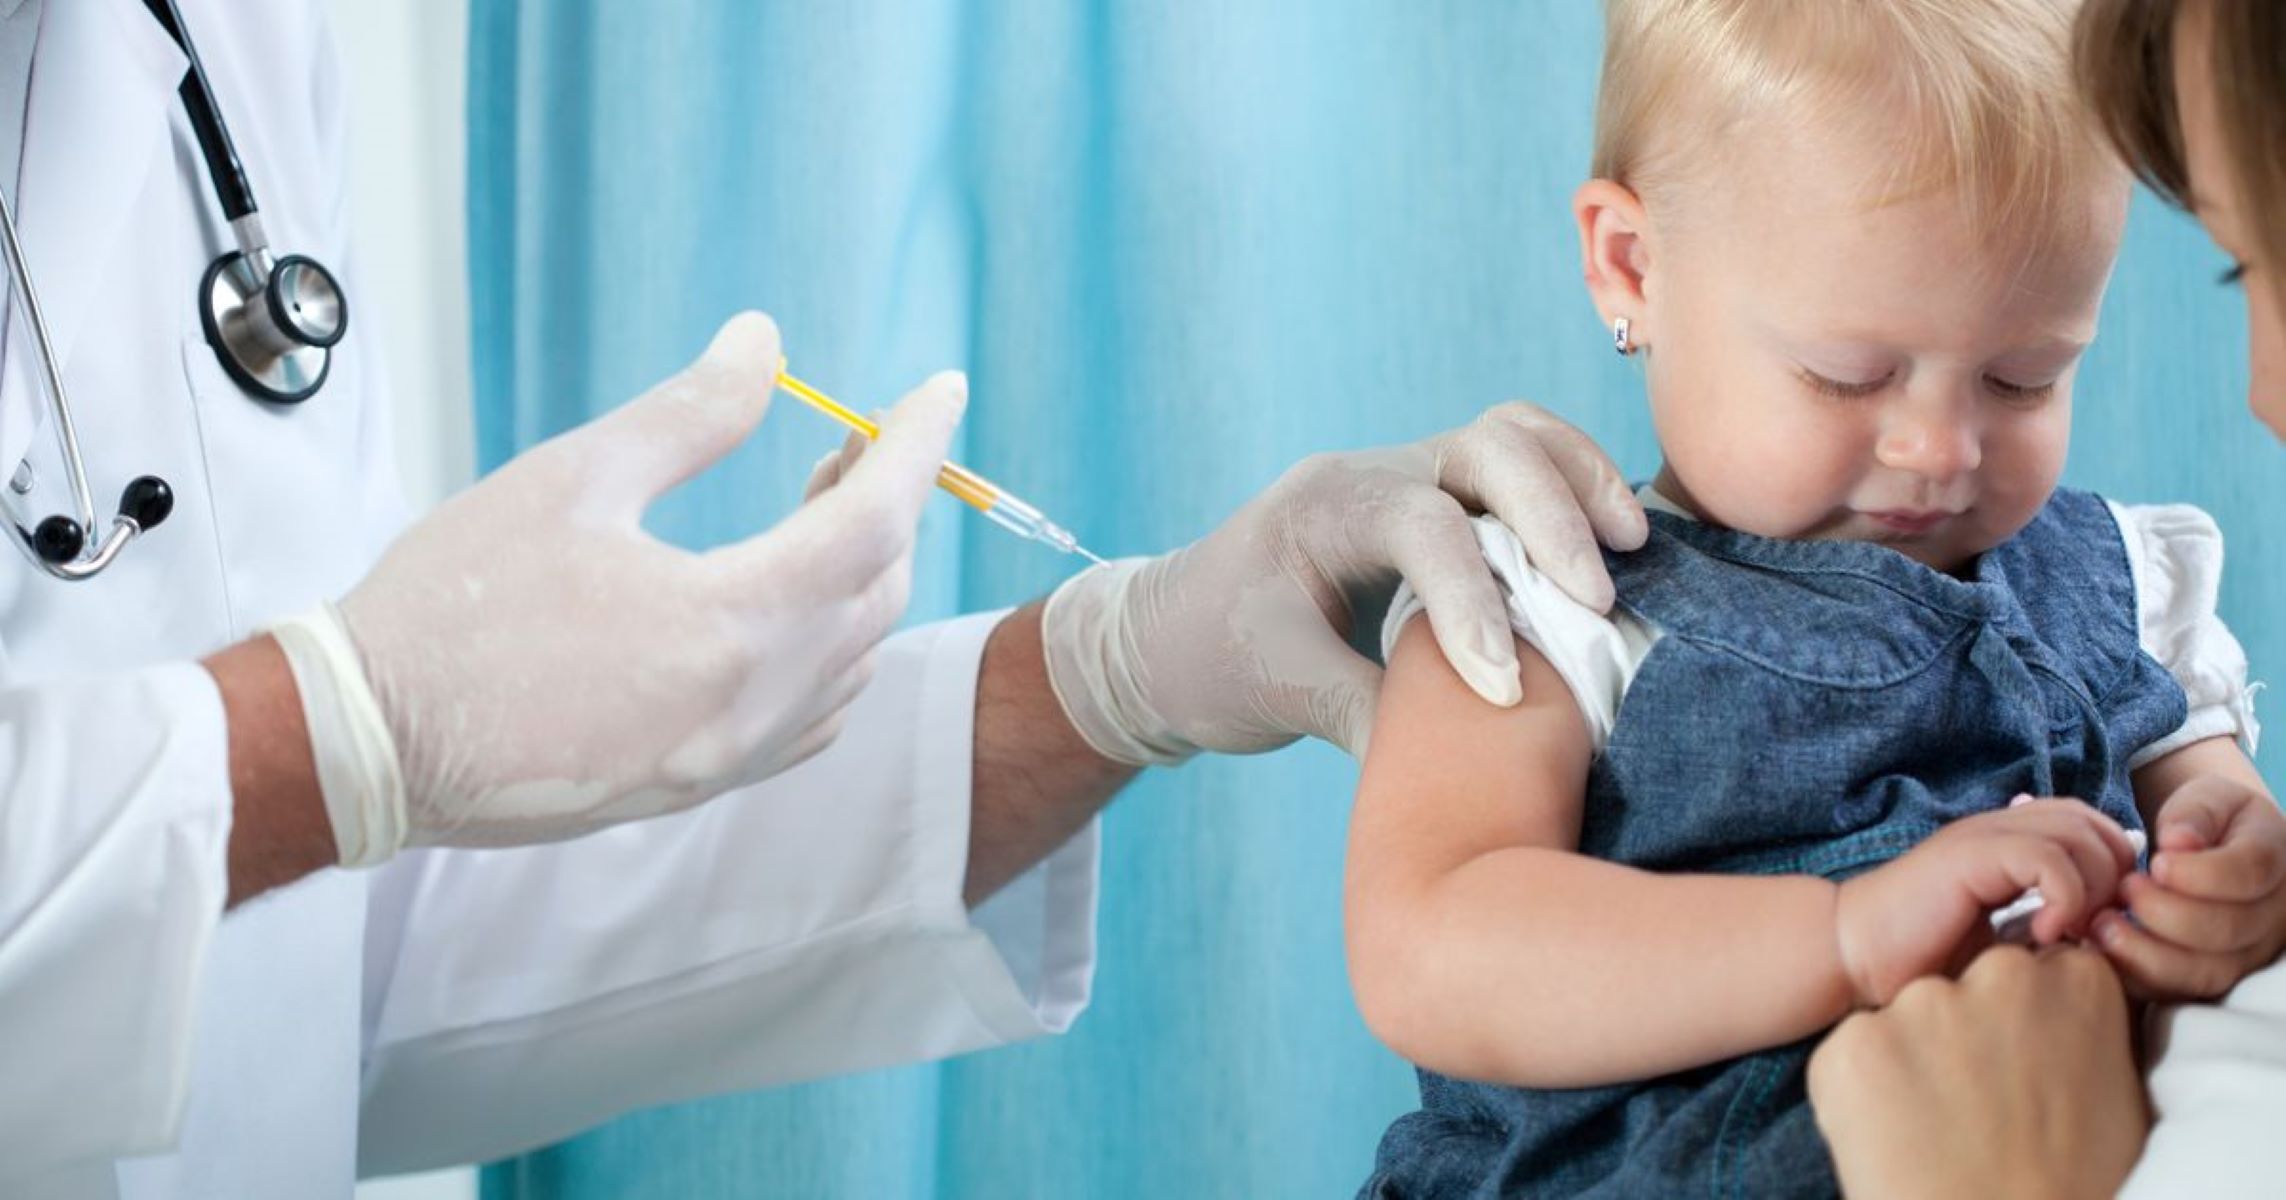 Εμβόλιο Μηνιγγίτιδας: Ανάγκη των πολίτων να ενταχθεί στα υποχρεωτικά και να το αποζημιώνει ο ΕΟΠΠΥ